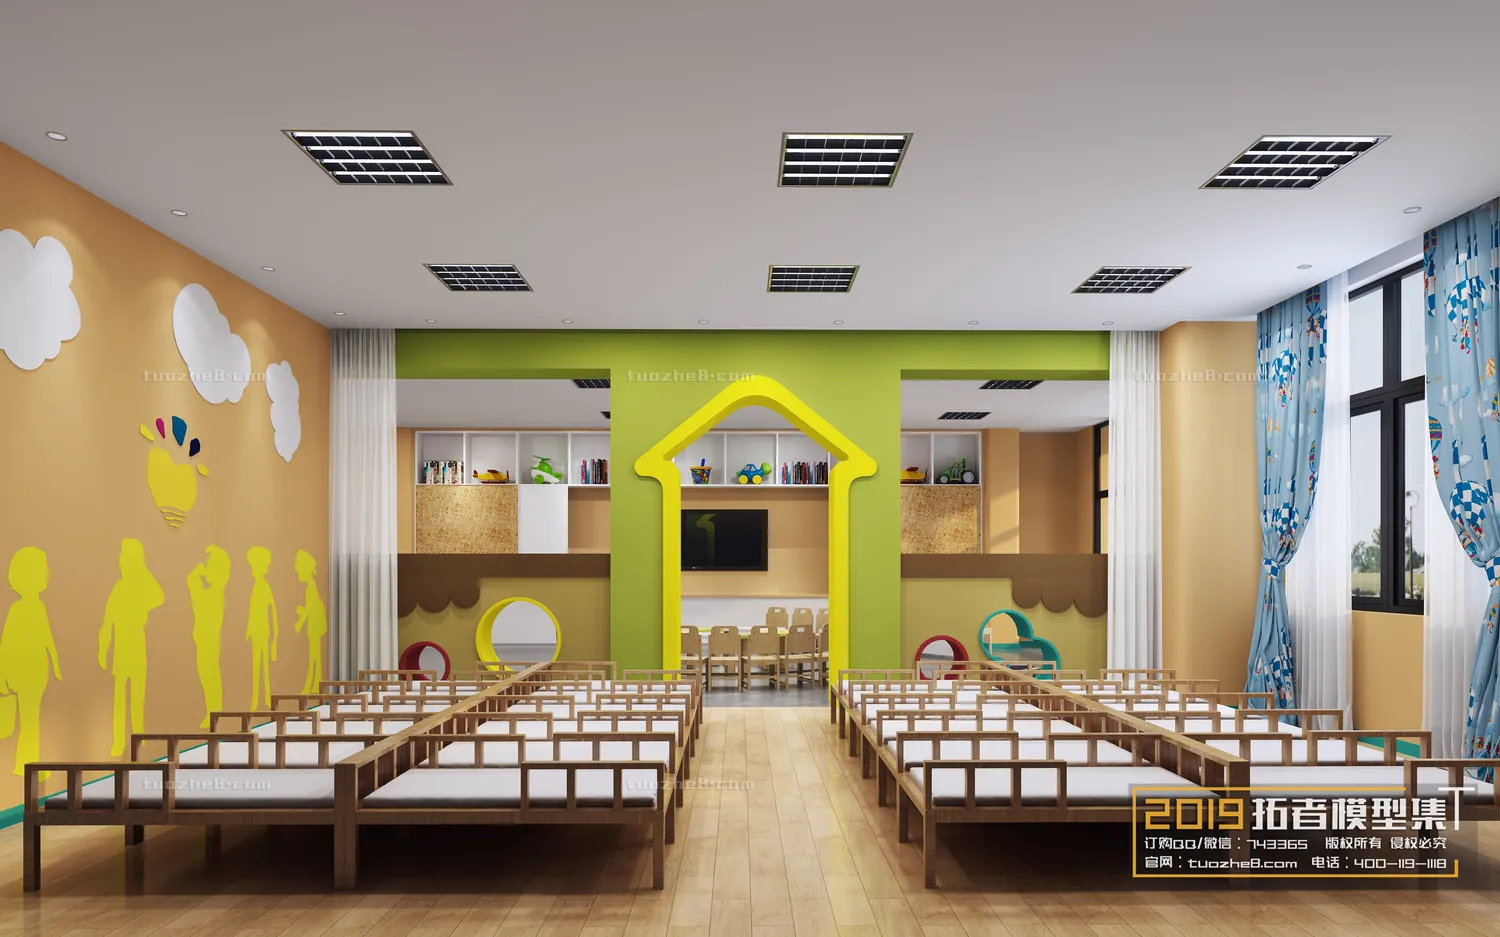 Extension Interior – KINDERGARTEN SCHOOL – 023